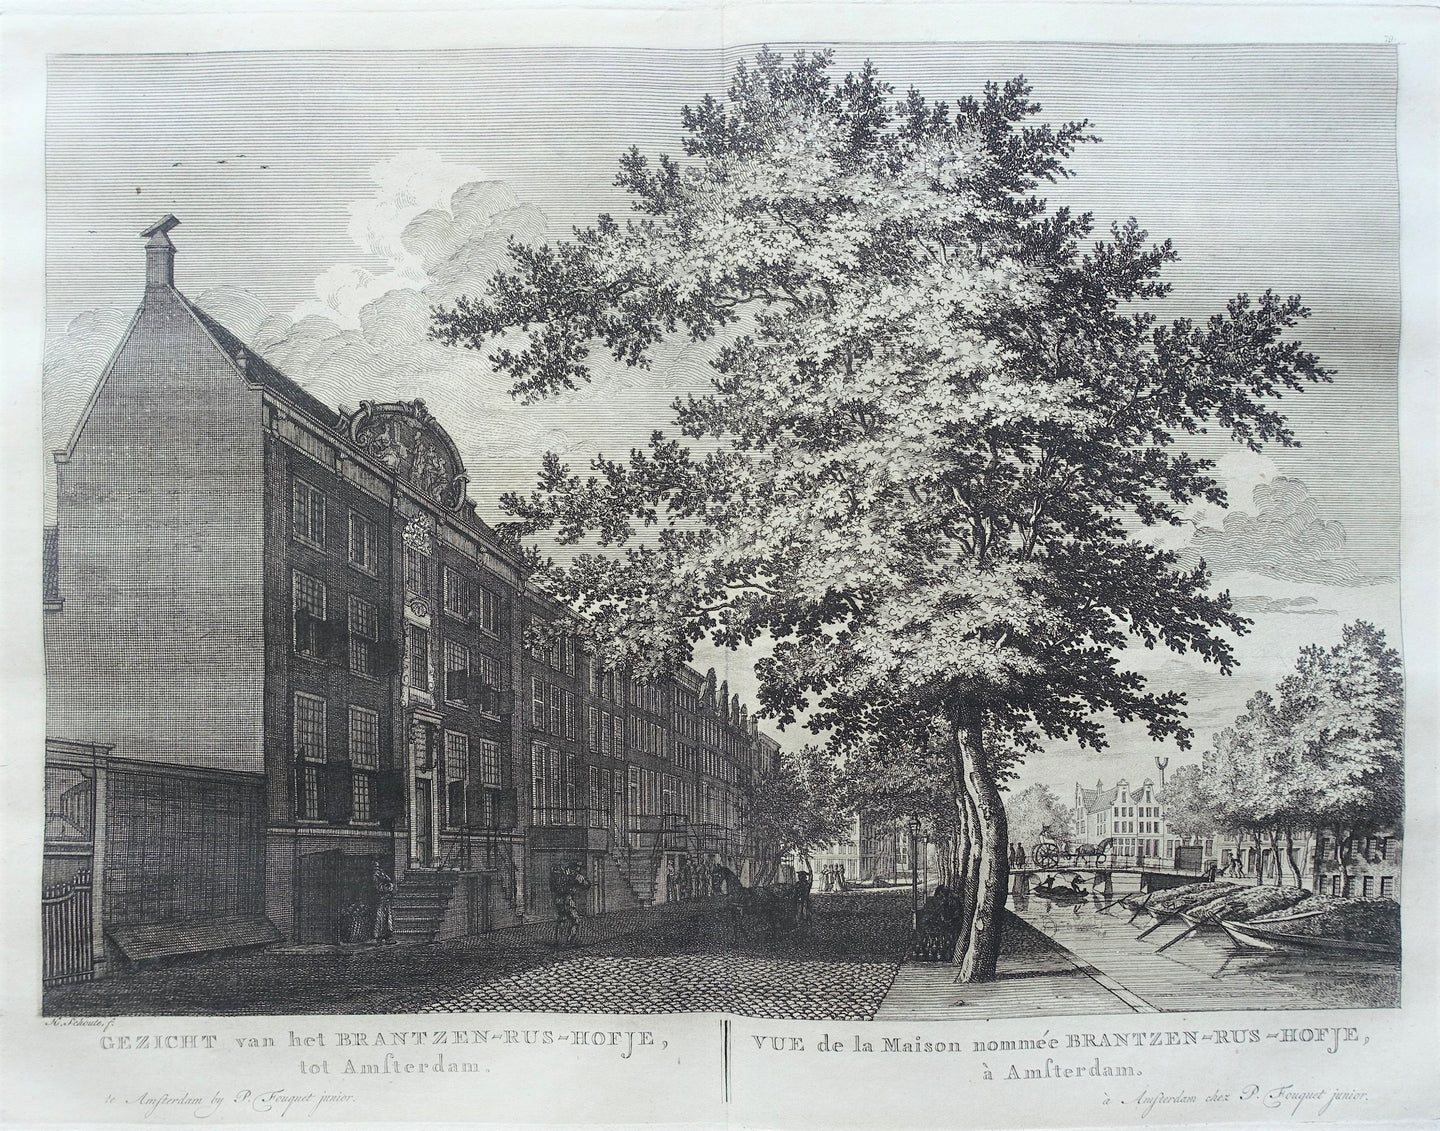 Amsterdam Nieuwe Keizersgracht Brantzen-Rushof - P Fouquet - 1783